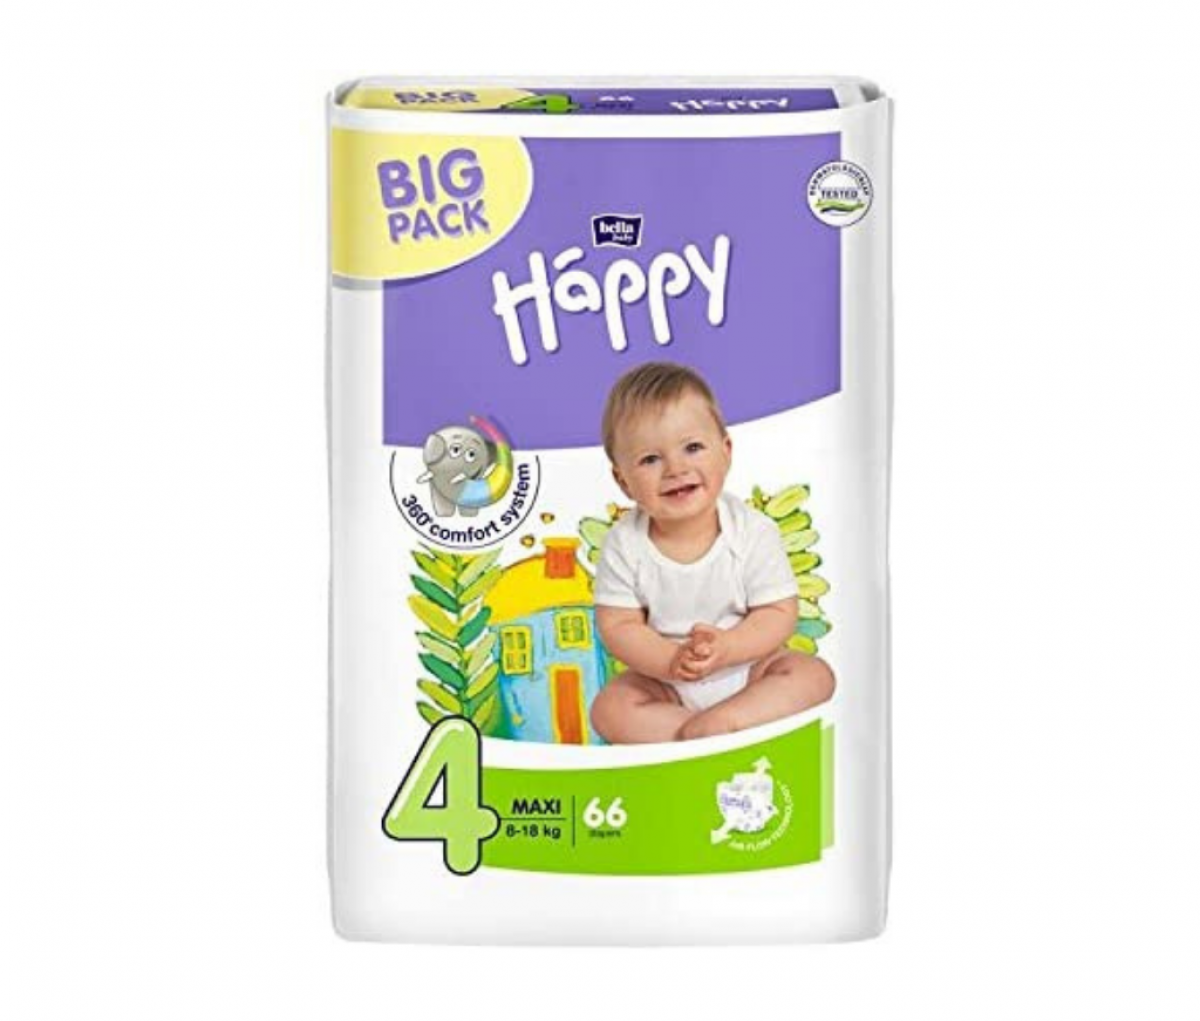 TZMO Happy Diaper Maxi A27